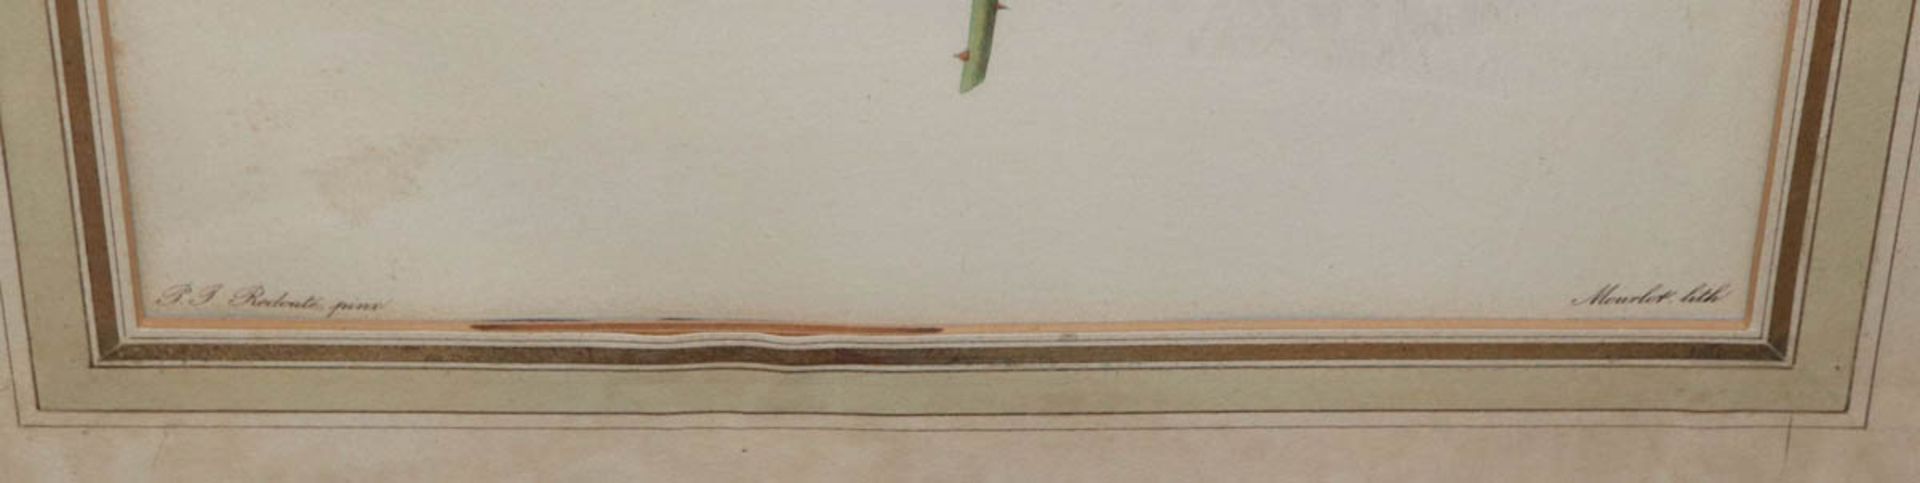 Redouté, Pierre Joseph1759 St. Hubert/Belgien - 1840 Paris. 3 Farblithografien mit - Image 2 of 2